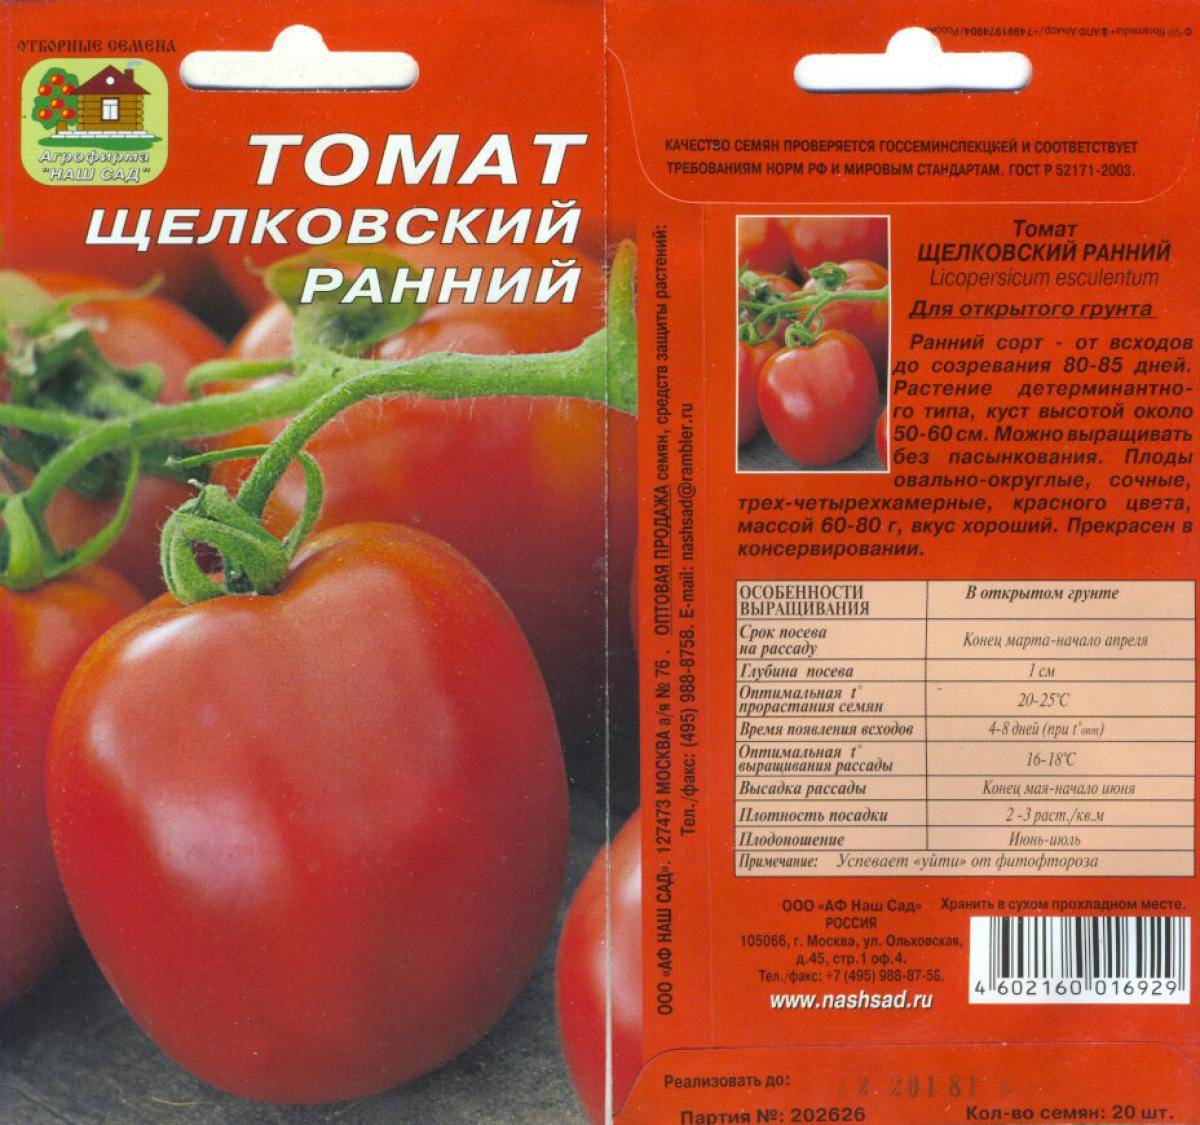 Томат ранний 83: характеристика и описание сорта, отзывы тех кто сажал помидоры об их урожайности, фото куста